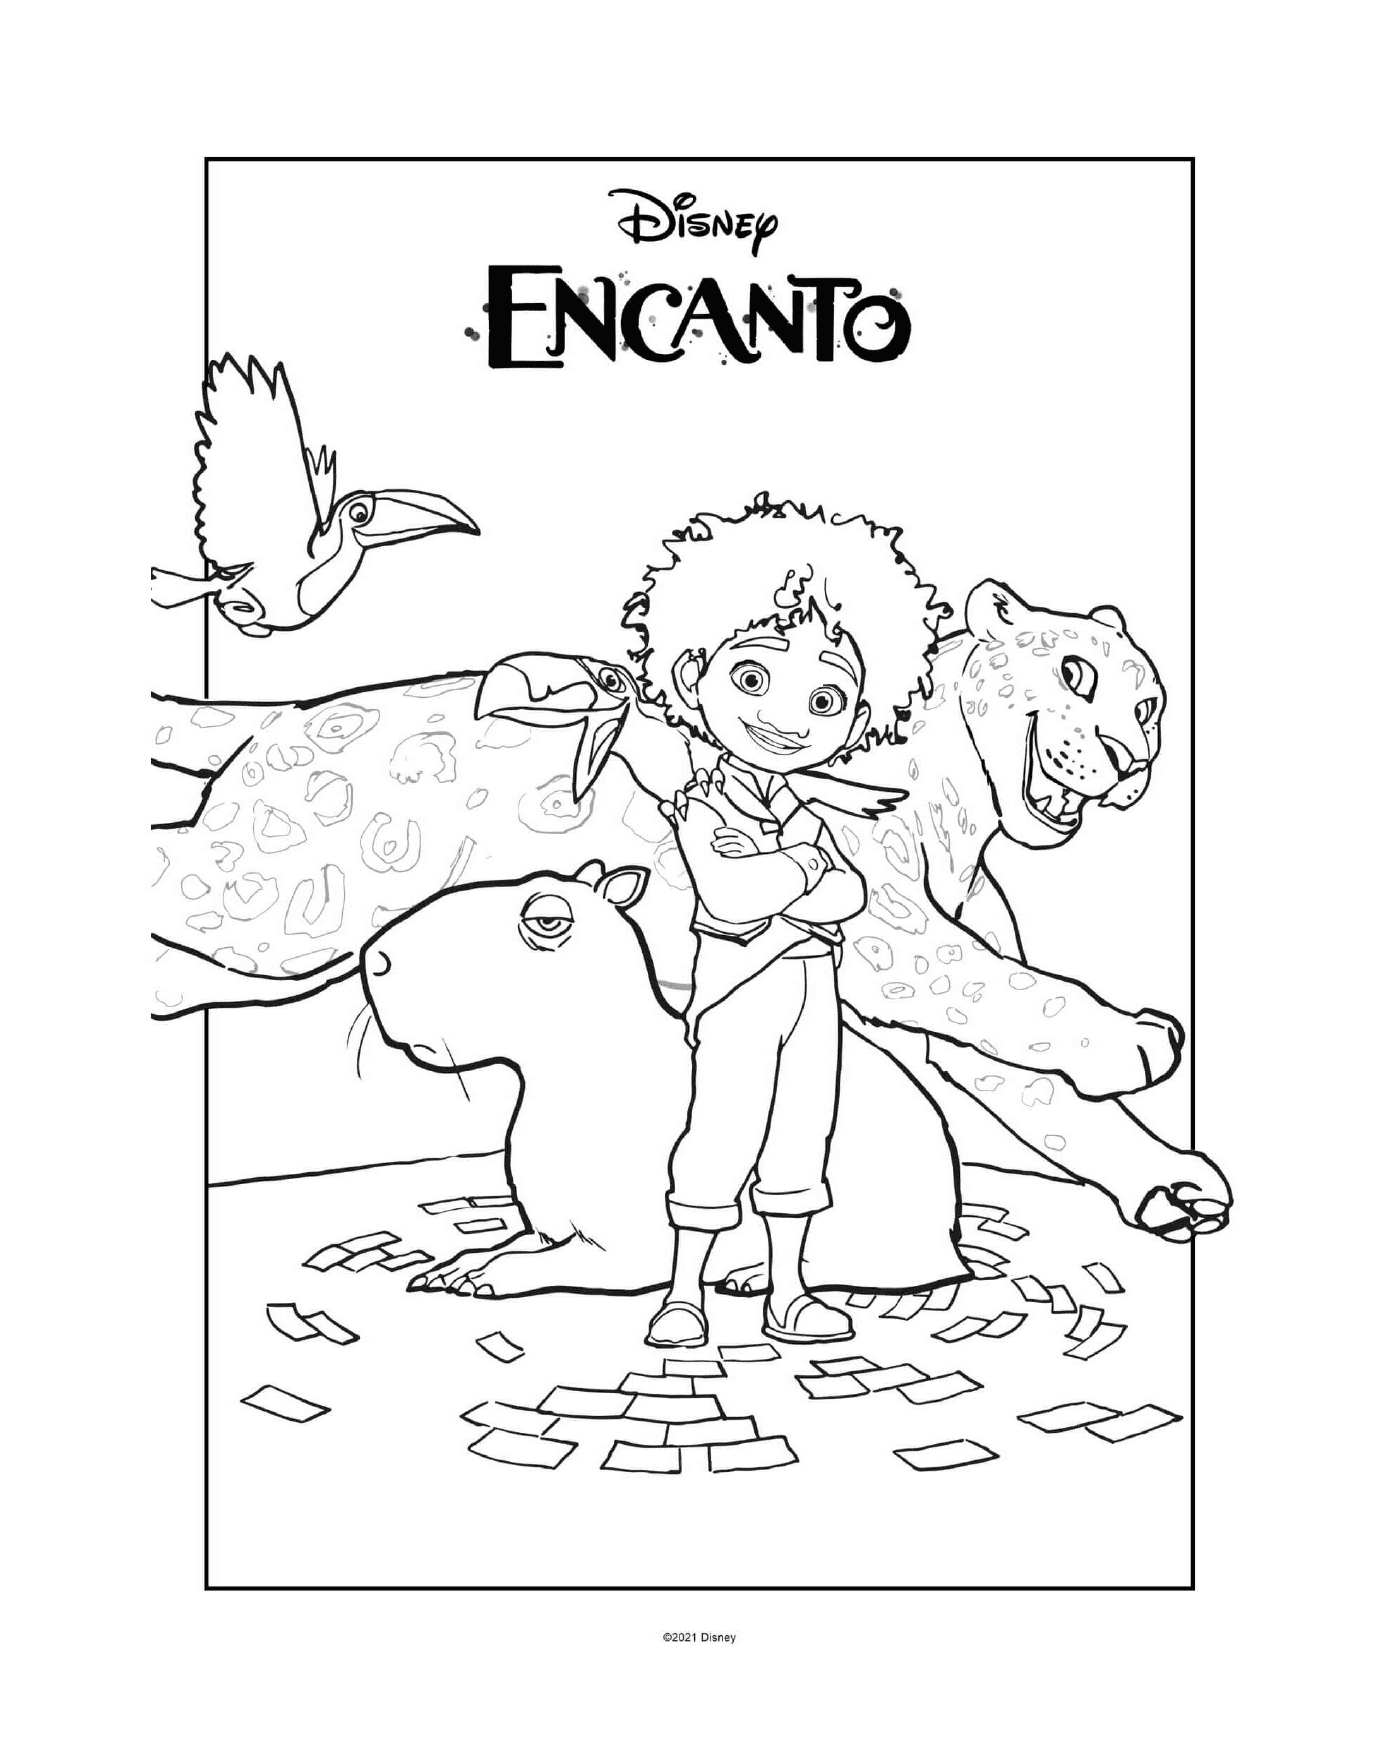  Antonio Encanto Disney and animals 